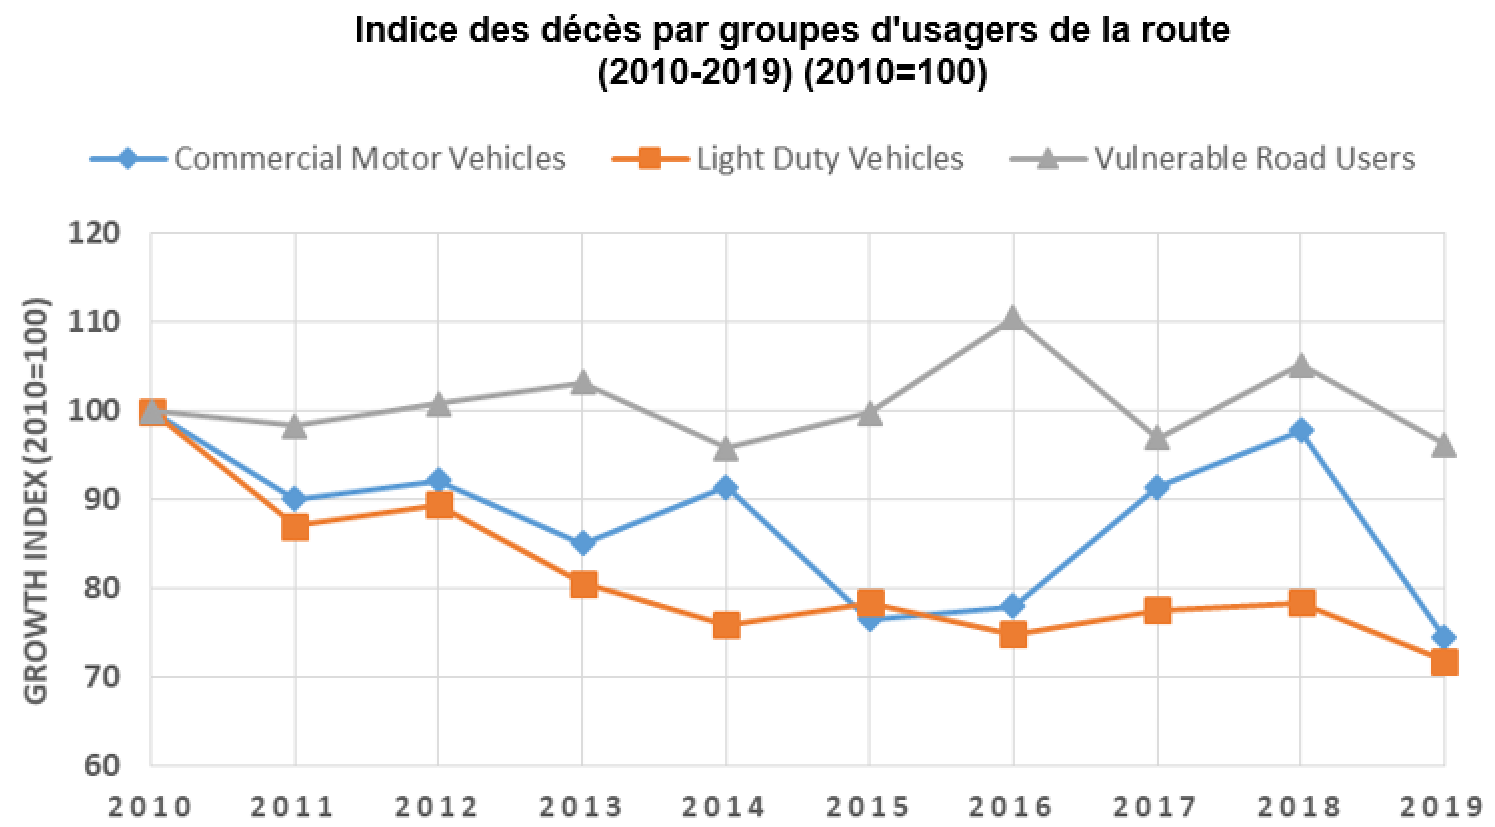 Ce graphique montre le nombre indexé de décès par catégorie d’usagers de la route, incluant les occupants de véhicules commerciaux et de véhicules légers, ainsi que les usagers vulnérables de la route, par année.